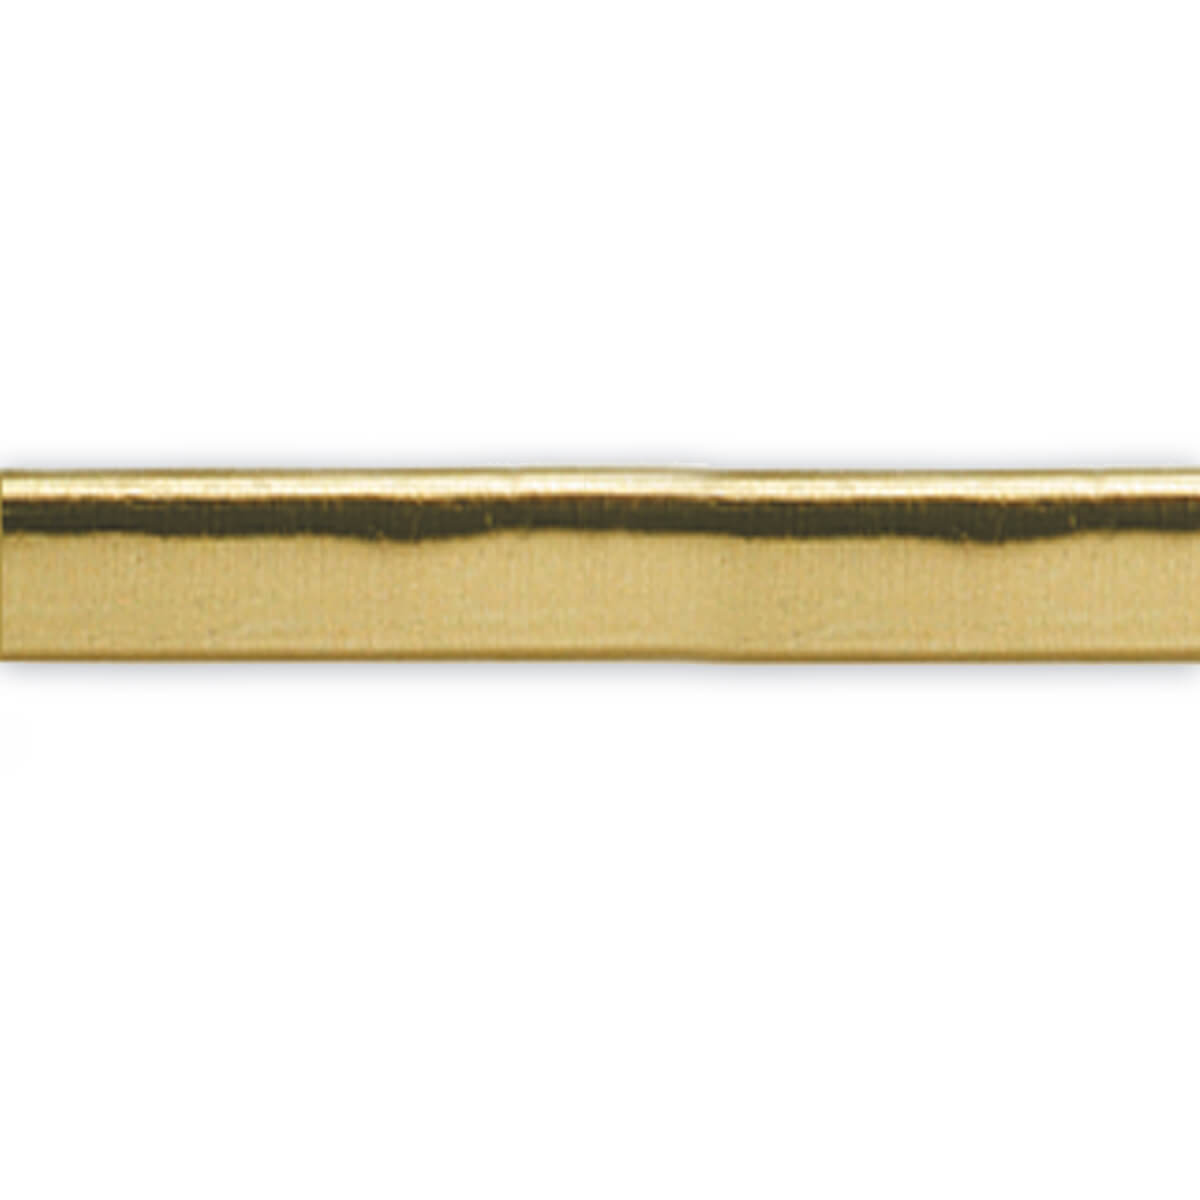 Goldstreifen flach - 450 x 7 mm